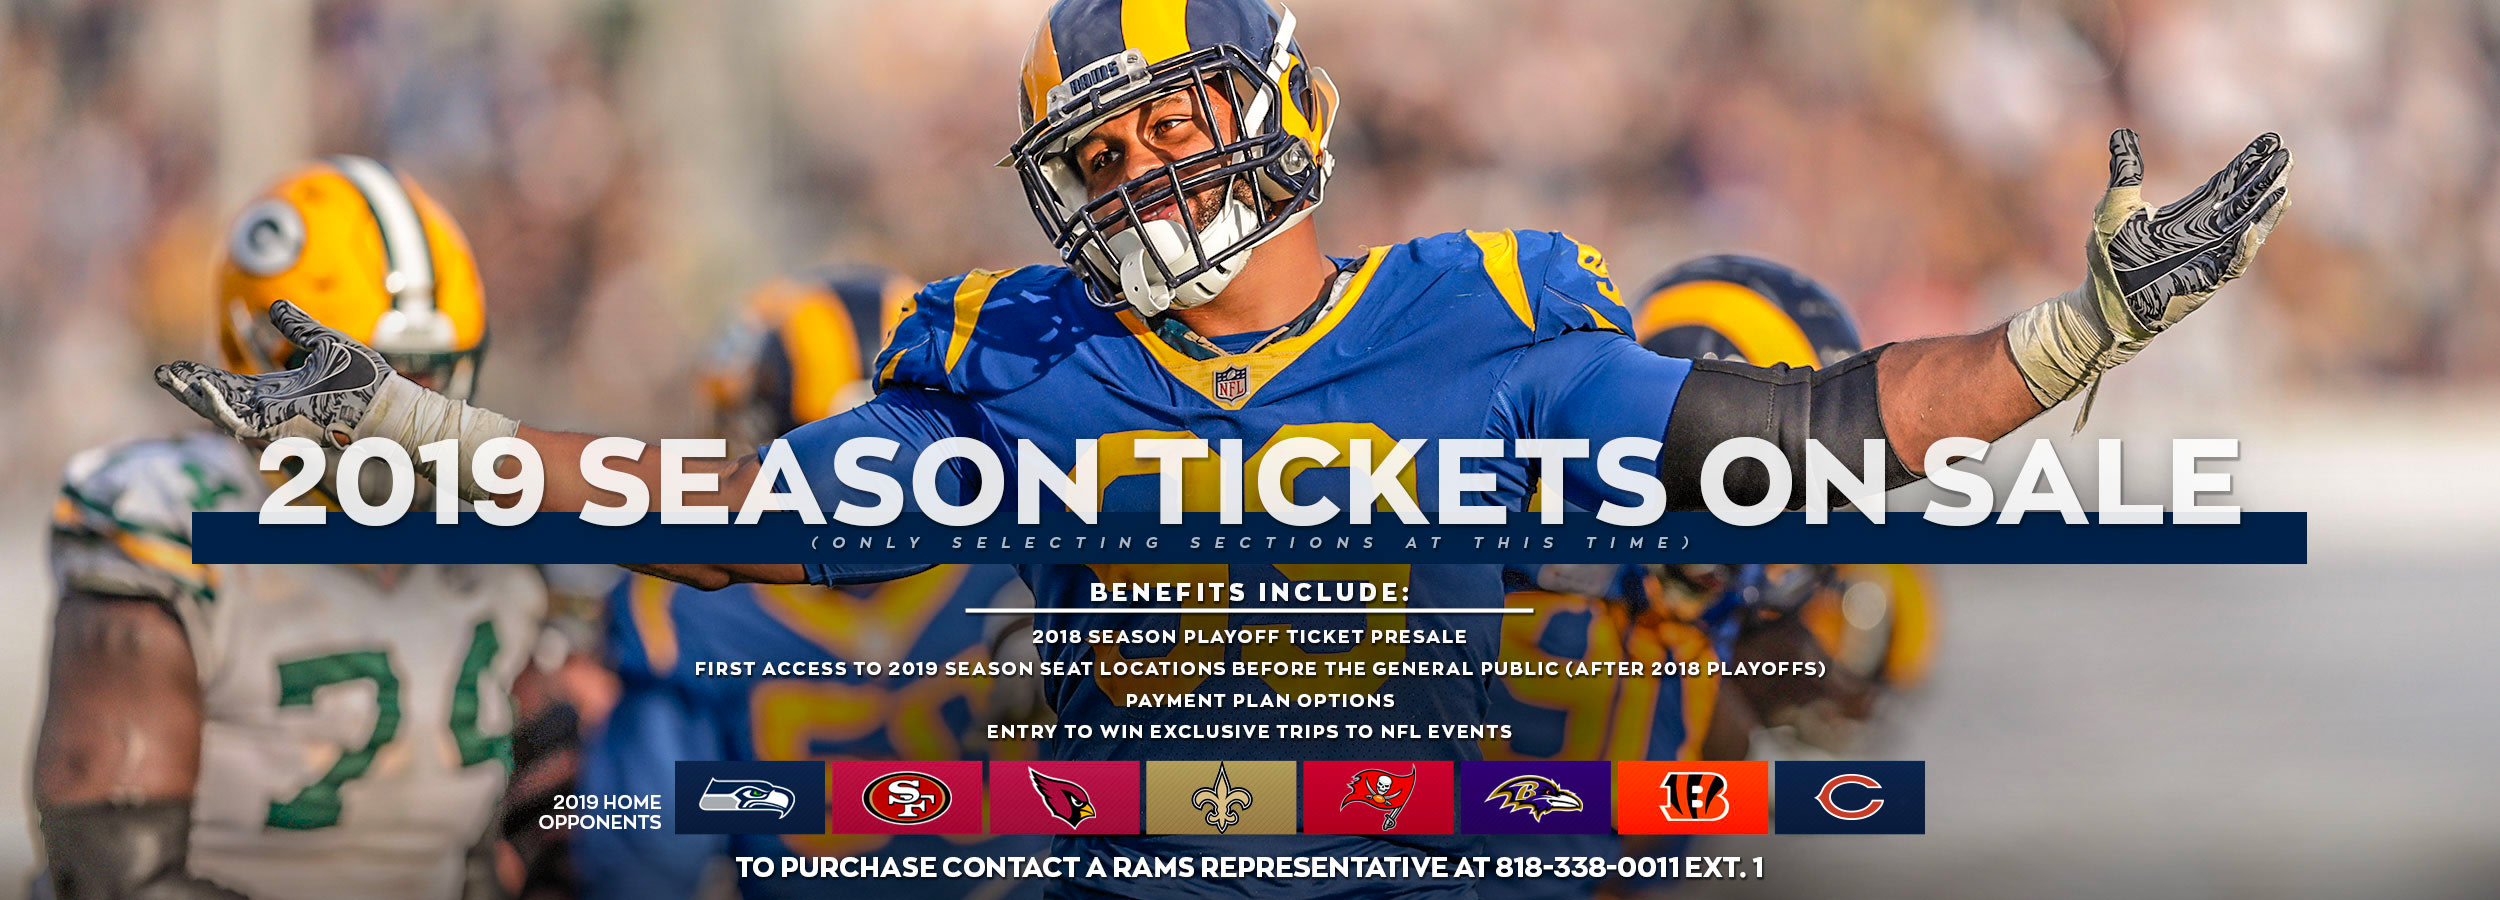 Rams Season Tickets Los Angeles Rams